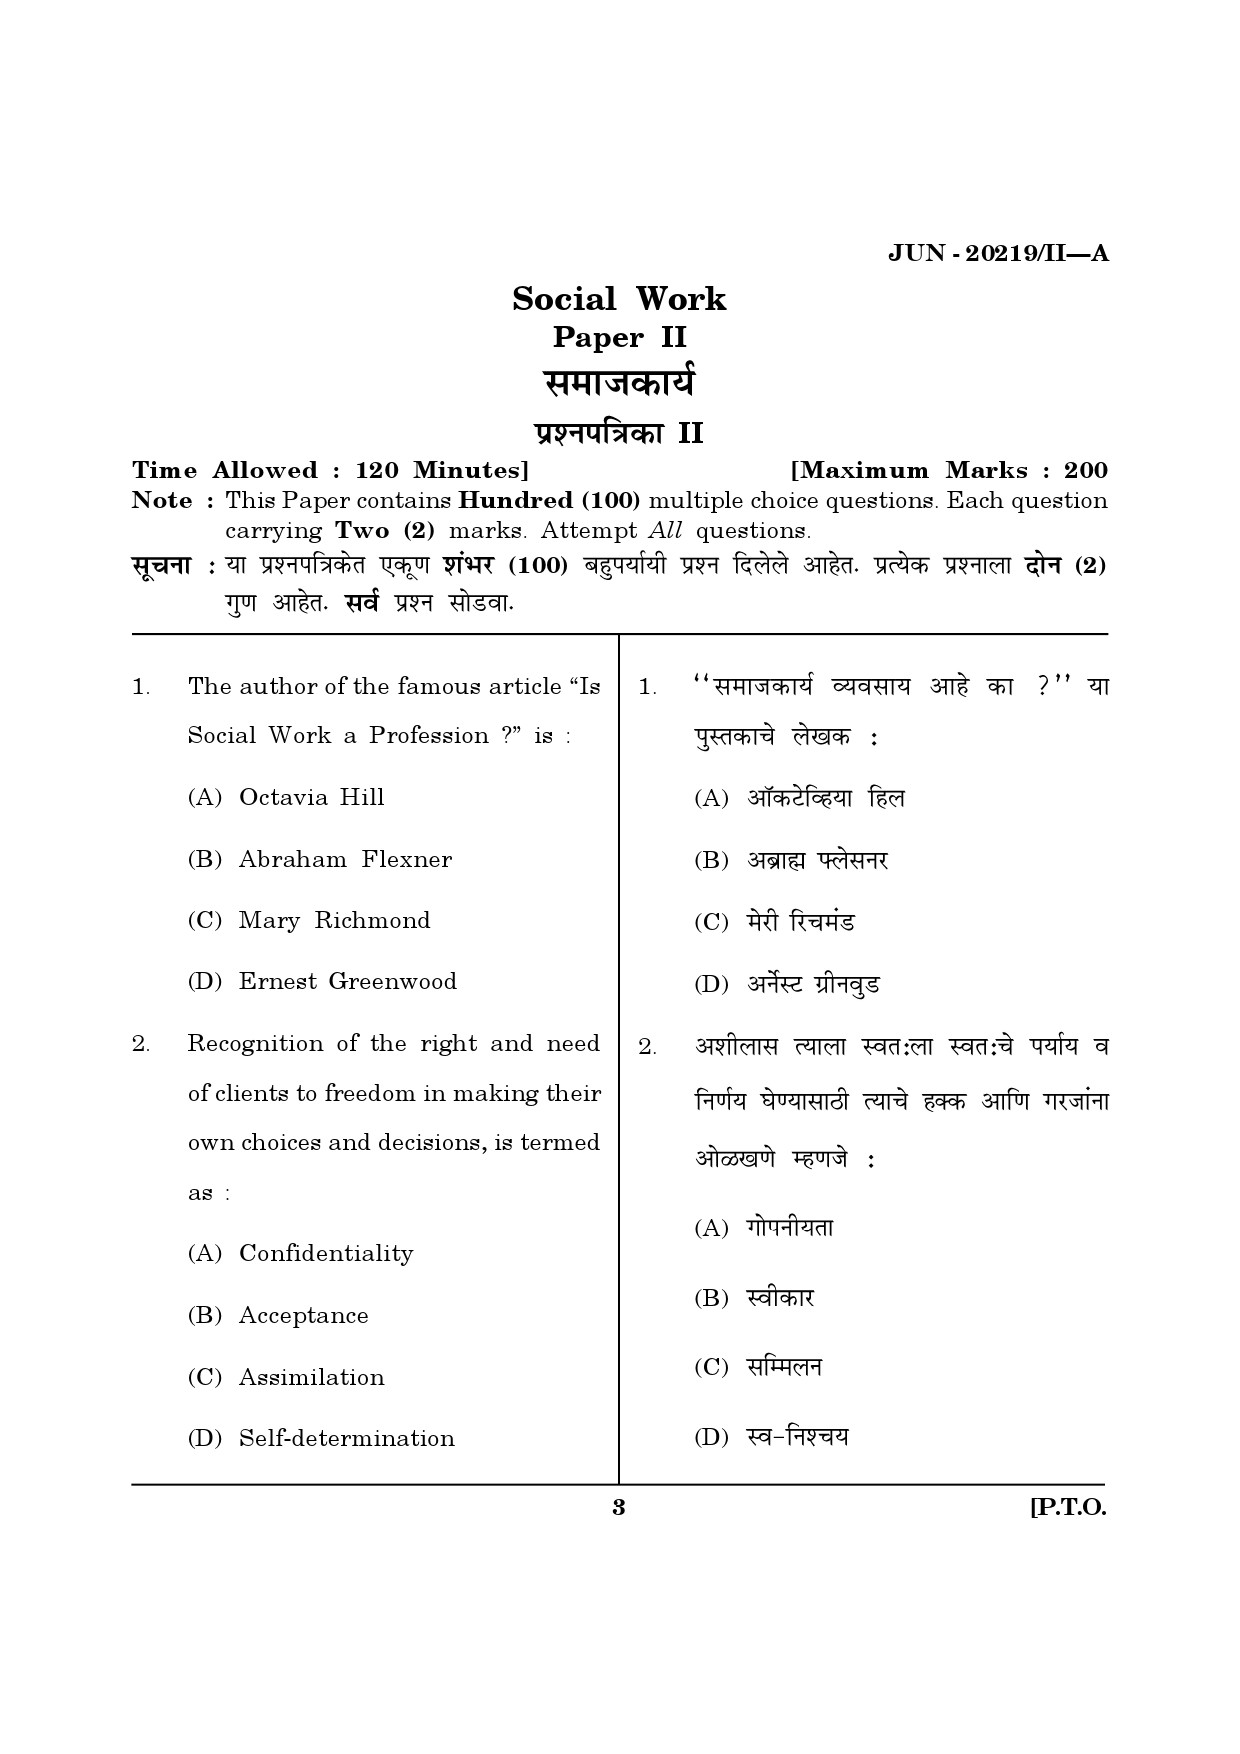 Maharashtra SET Social Work Question Paper II June 2019 2